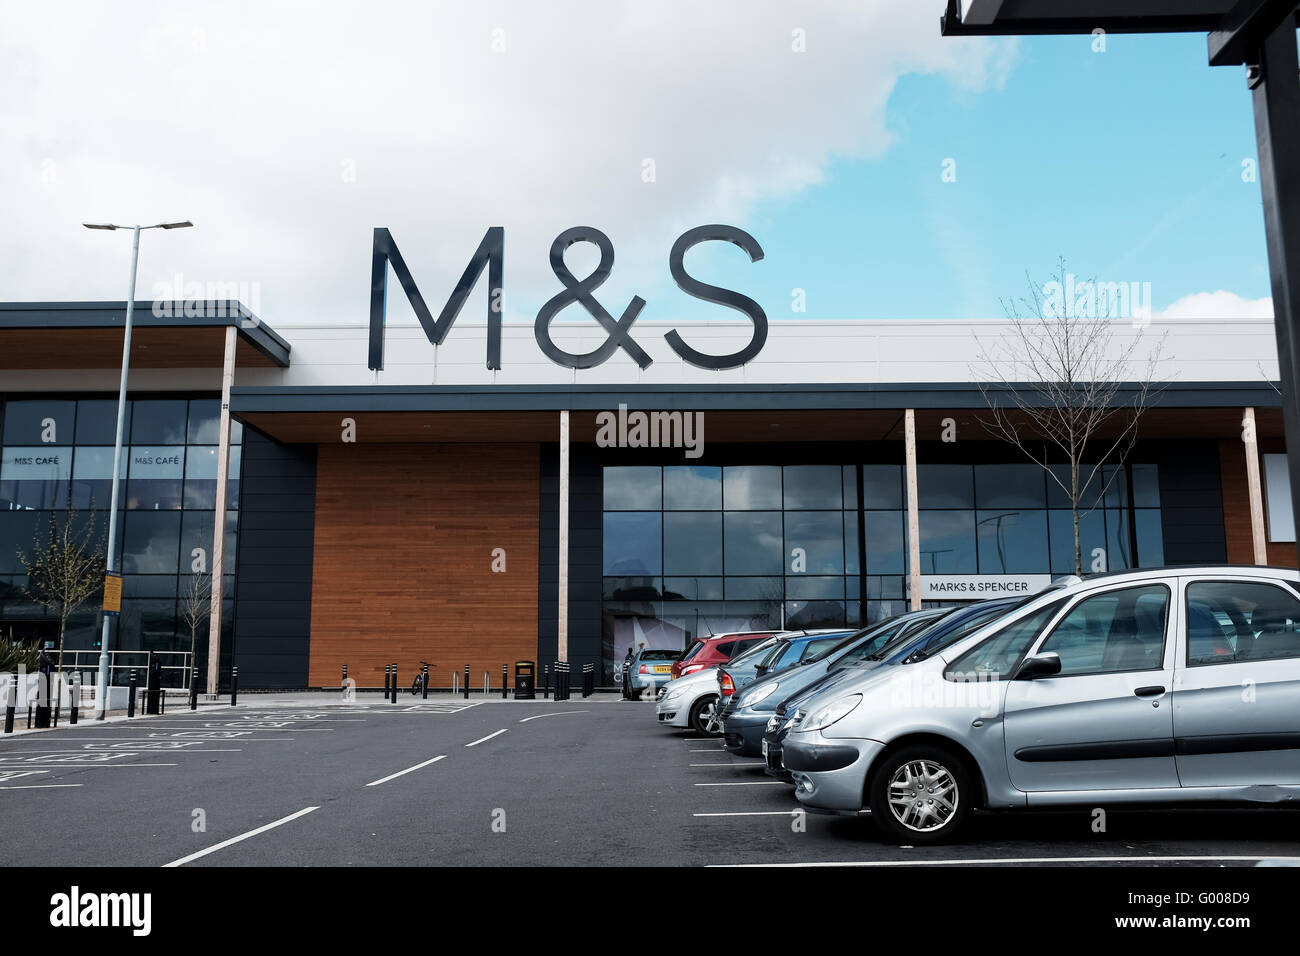 Le nouveau M&S magasin Marks & Spencer et de l'alimentation dans le sud-est  de Londres Royaume-uni Charlton Photo Stock - Alamy